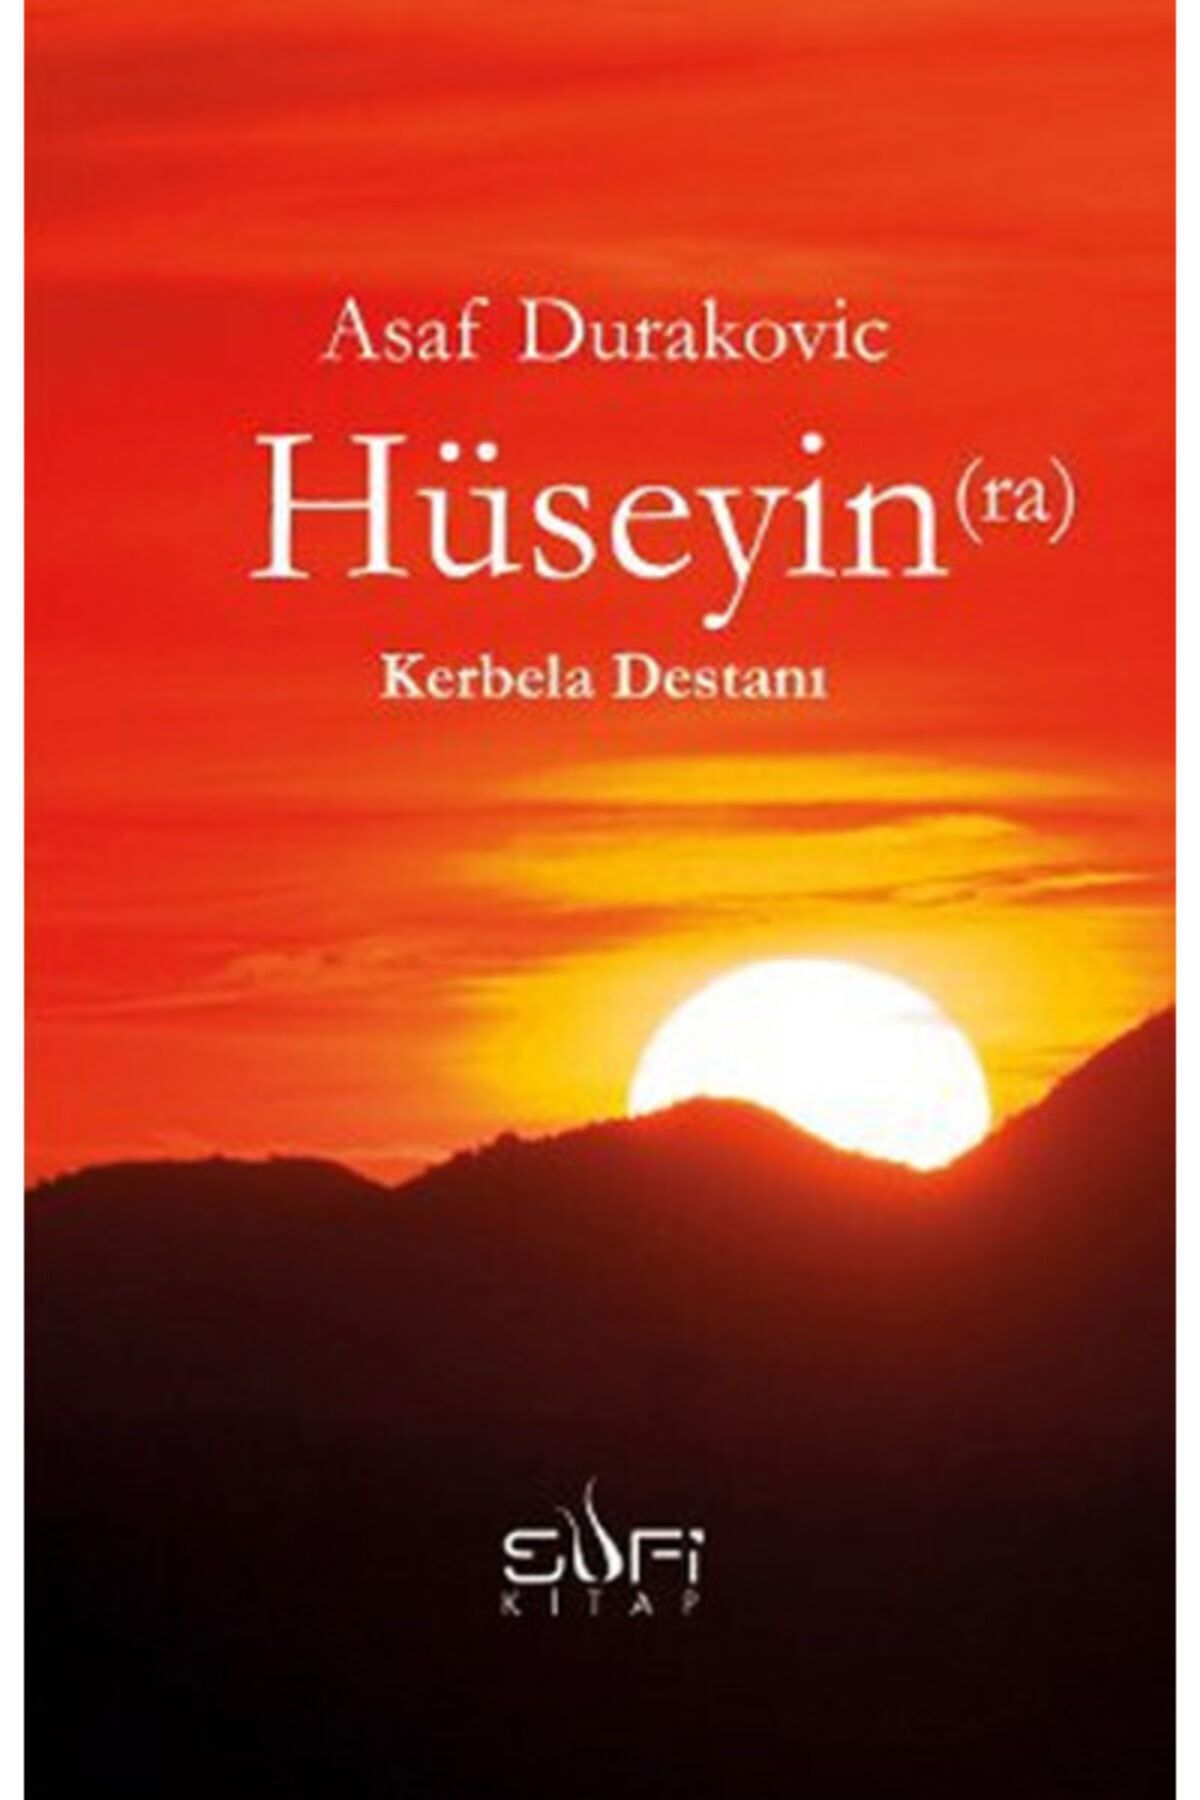 Sufi Kitap Hüseyin (r.a.) Kerbela Destanı Asaf Durakovic